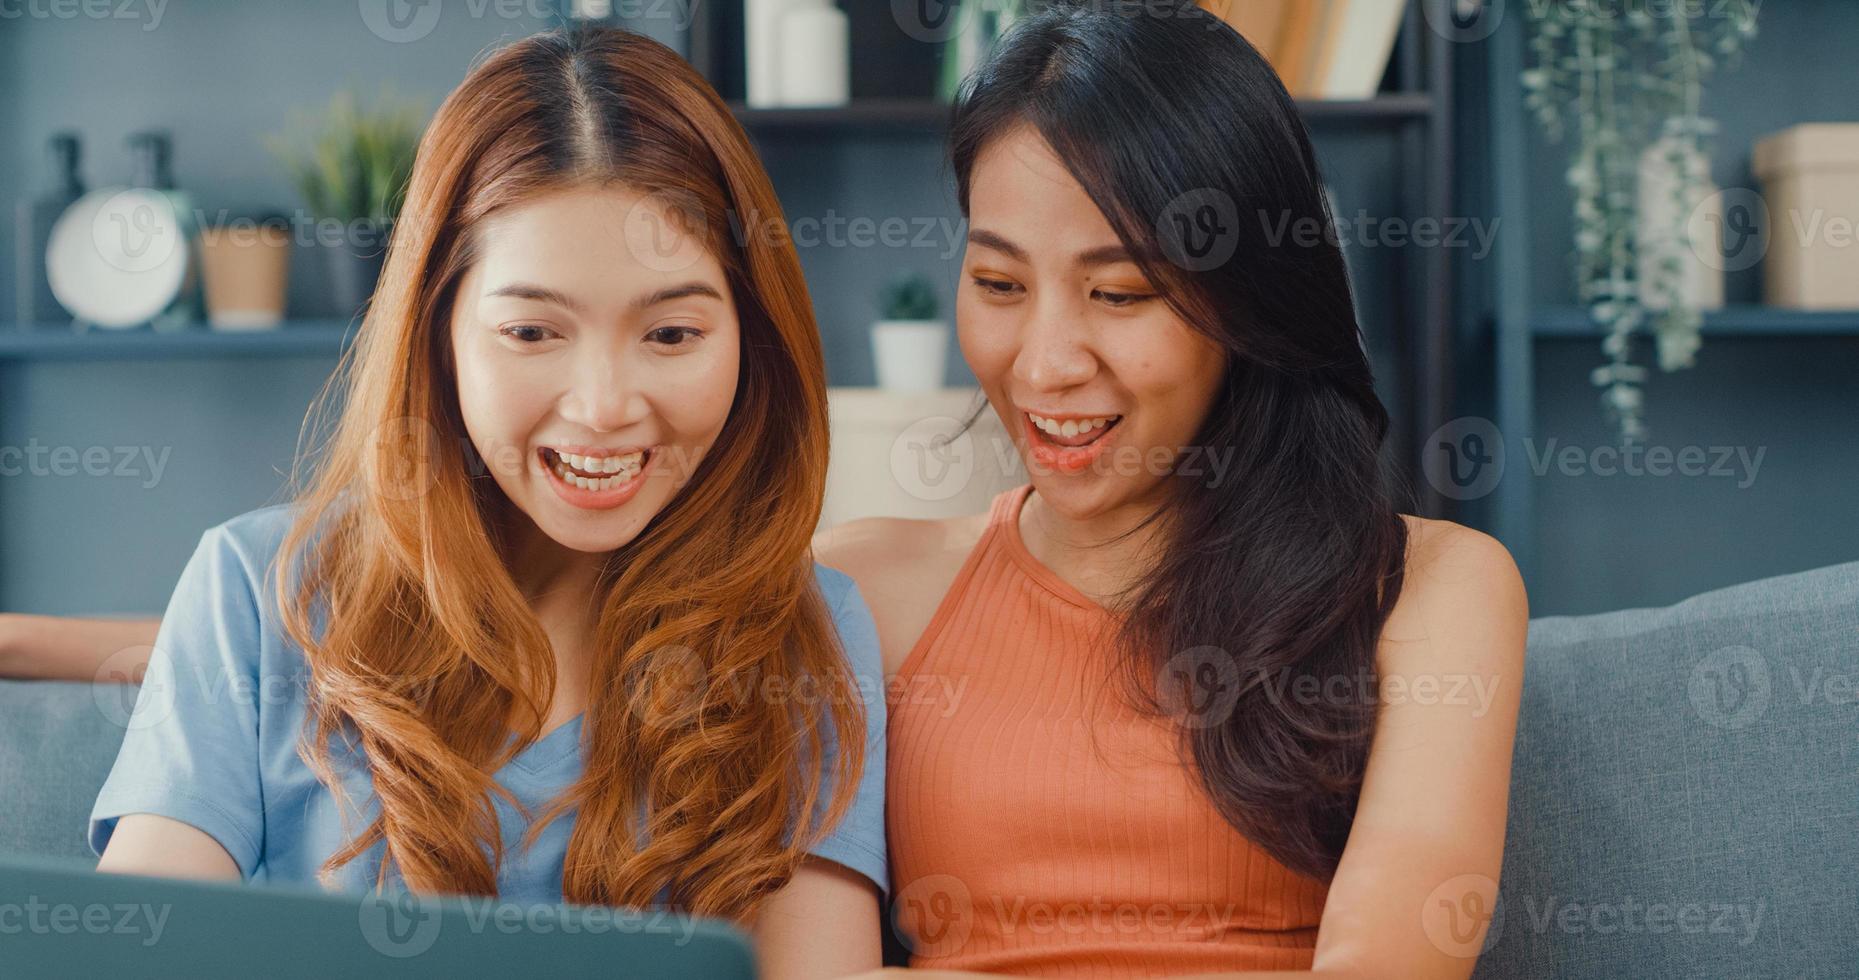 två asien lesbiska kvinnor webbplats på soffan tillsammans tittar på laptop skärm i vardagsrummet hemma tillsammans. lyckliga par rumskamrat damer njuta av webbsurfing online shopping, livsstil kvinna hemma koncept. foto